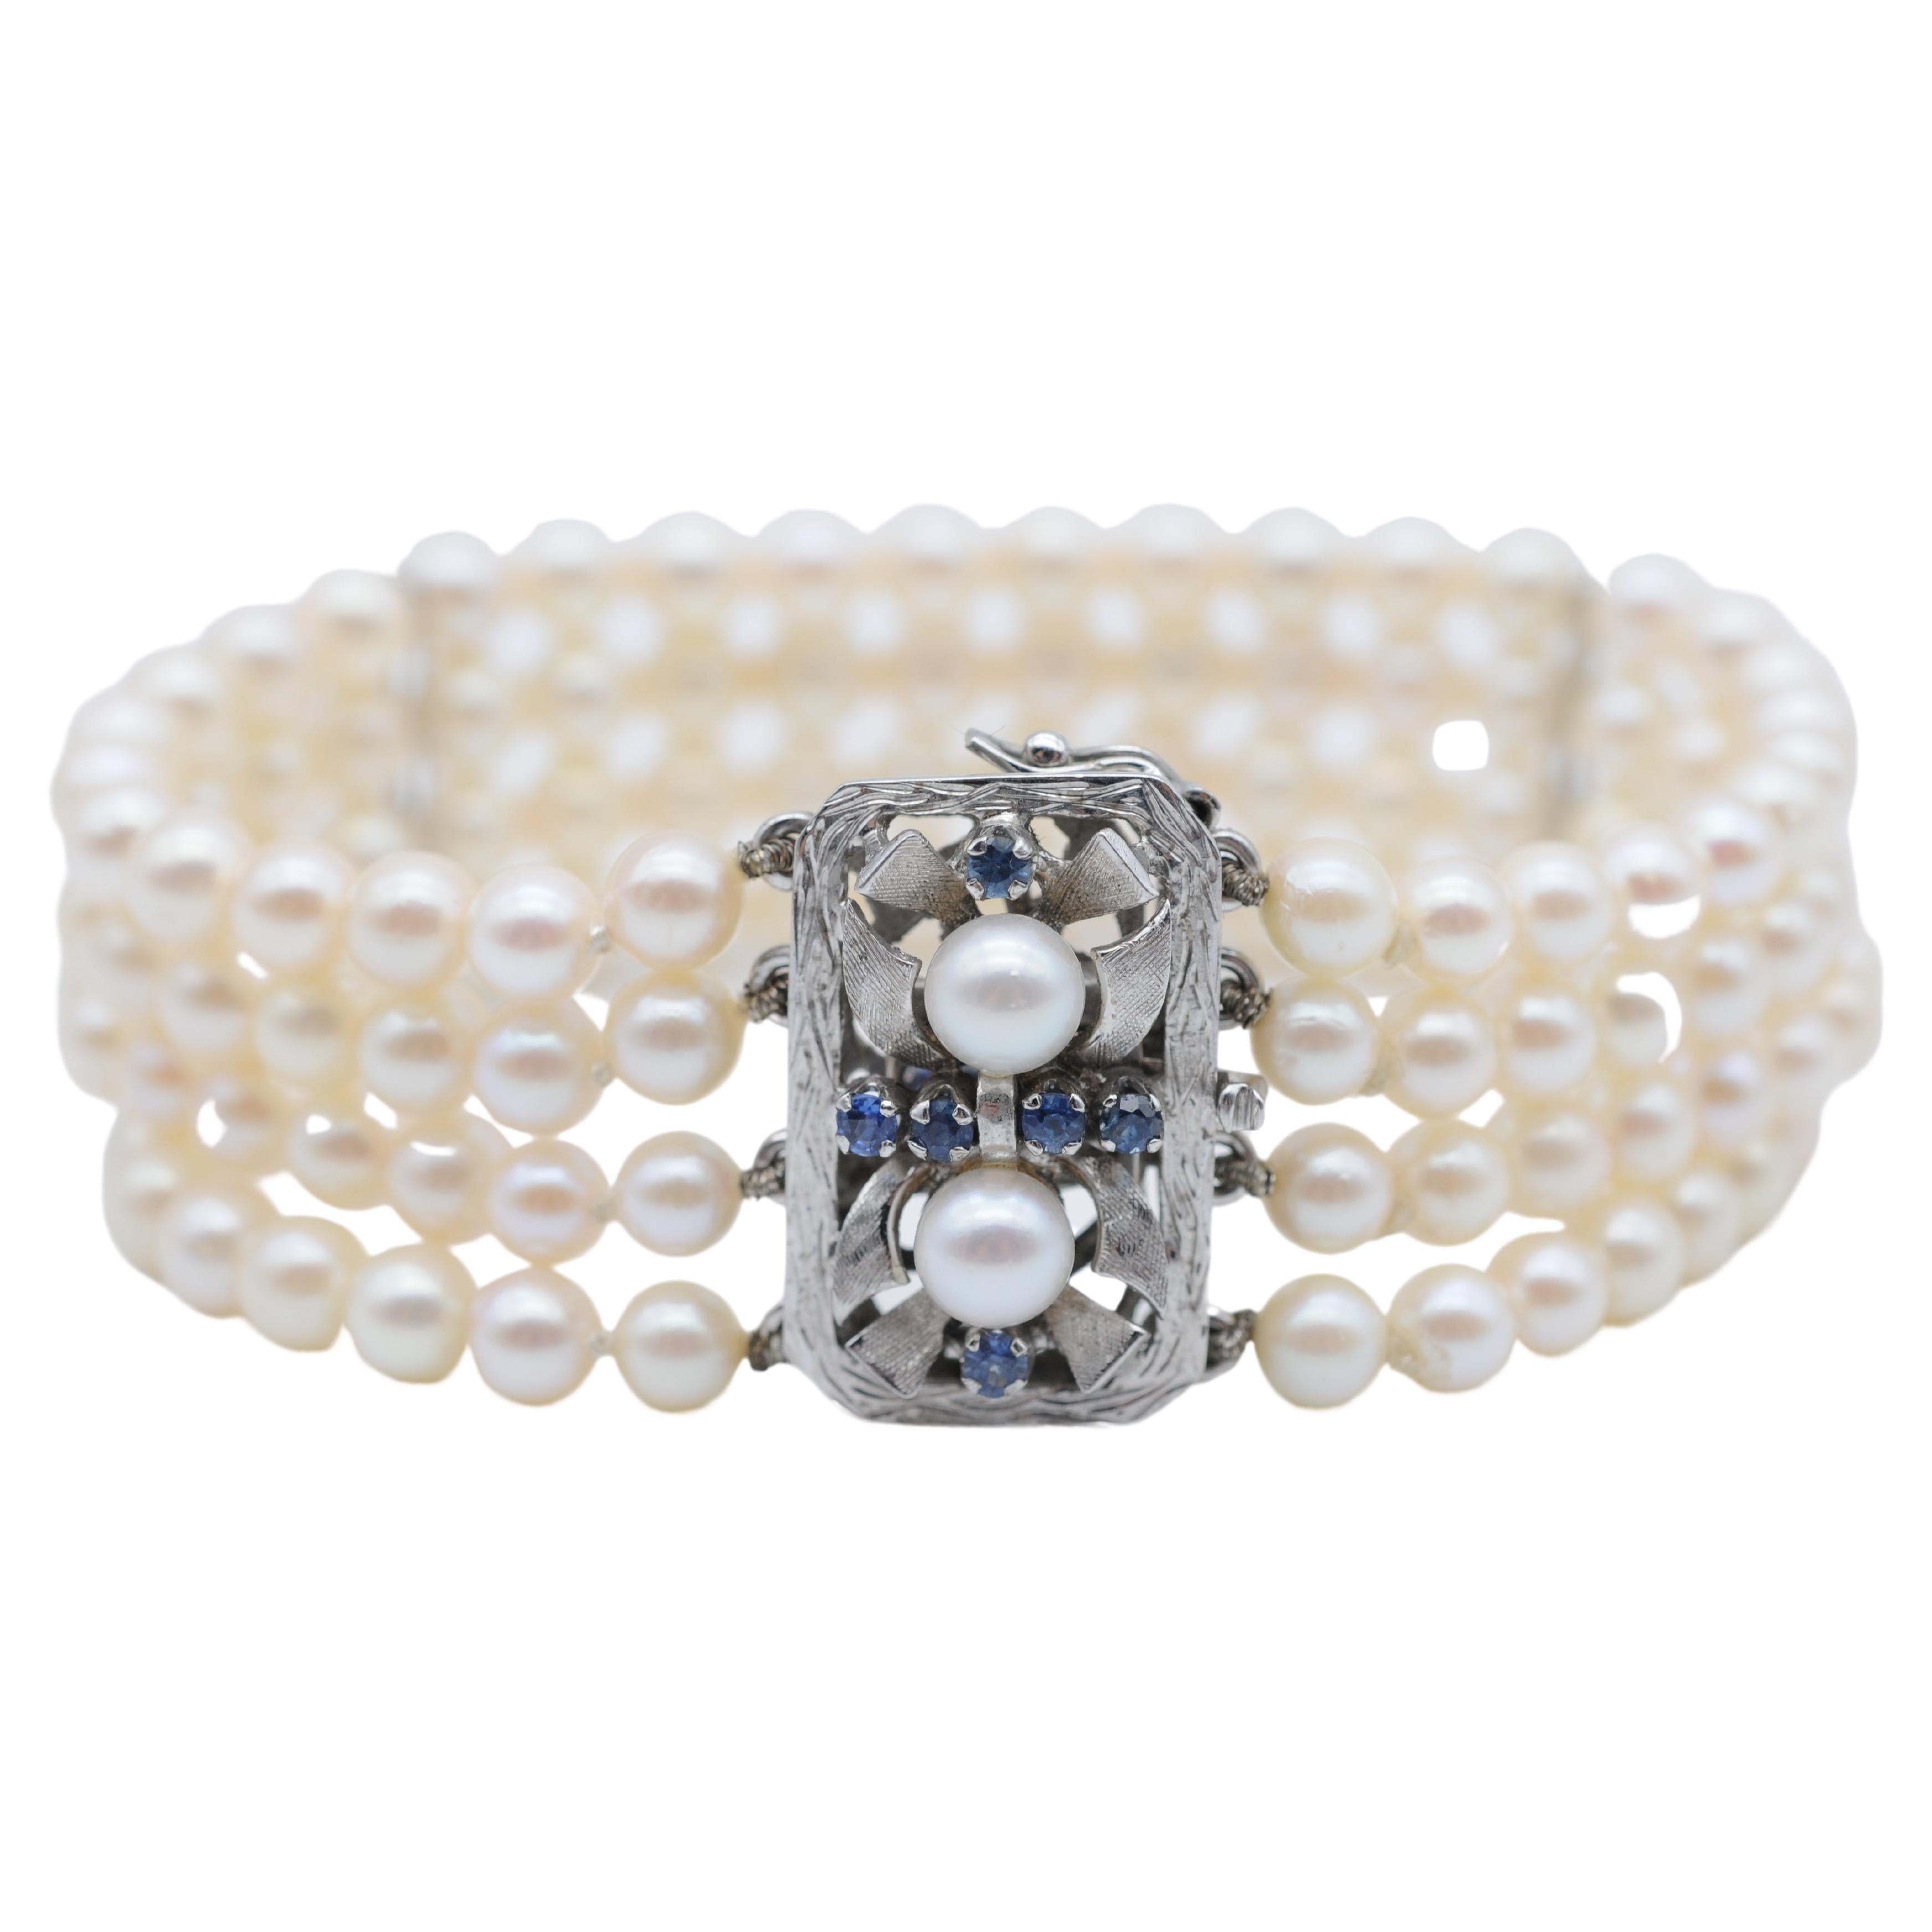 Bracelet de perles nobles, or blanc 14 carats et saphirs